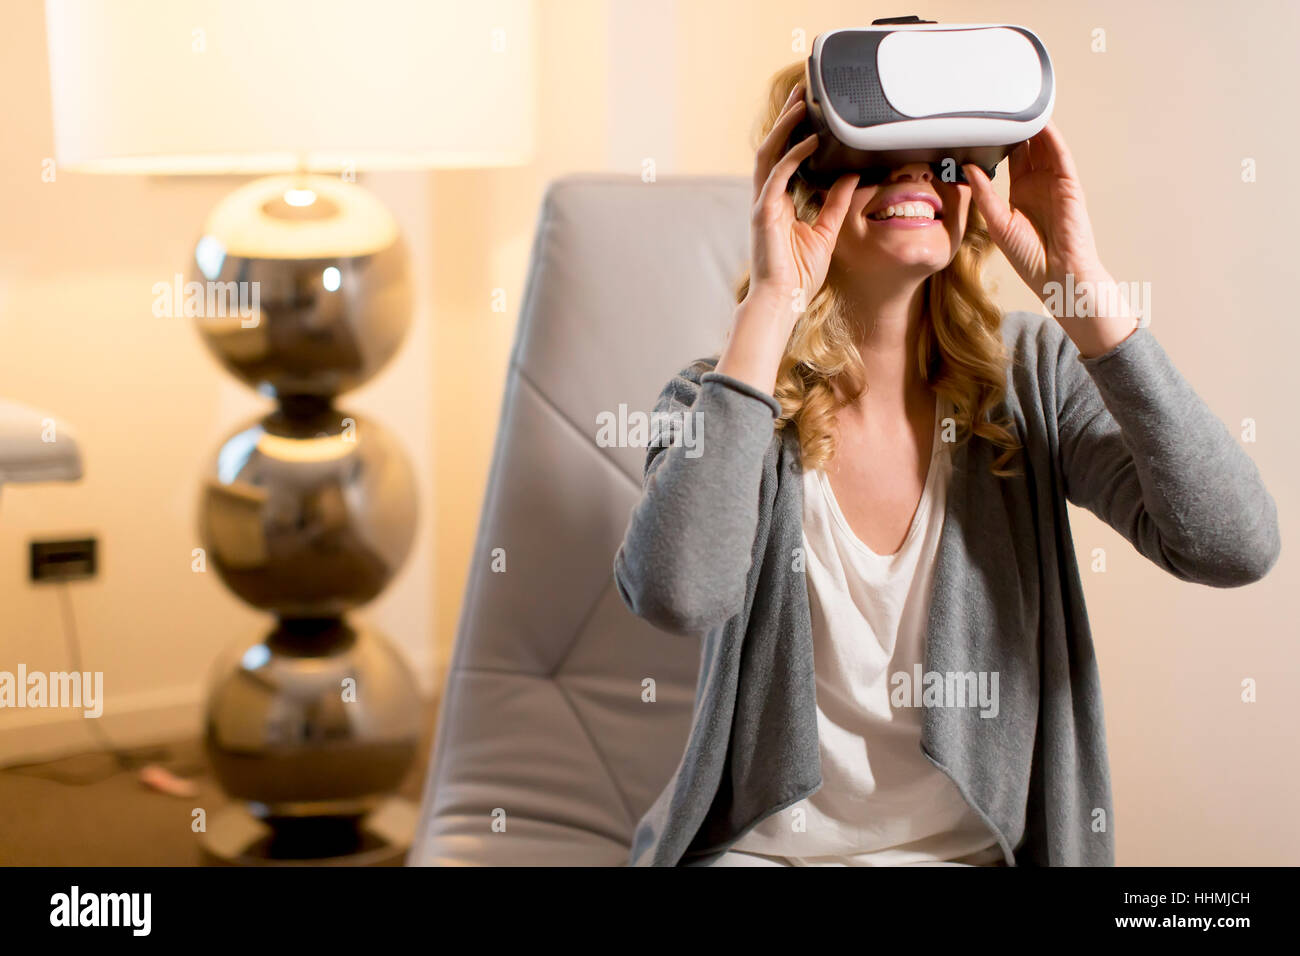 Femme portant des lunettes de réalité virtuelle dans la chambre Banque D'Images